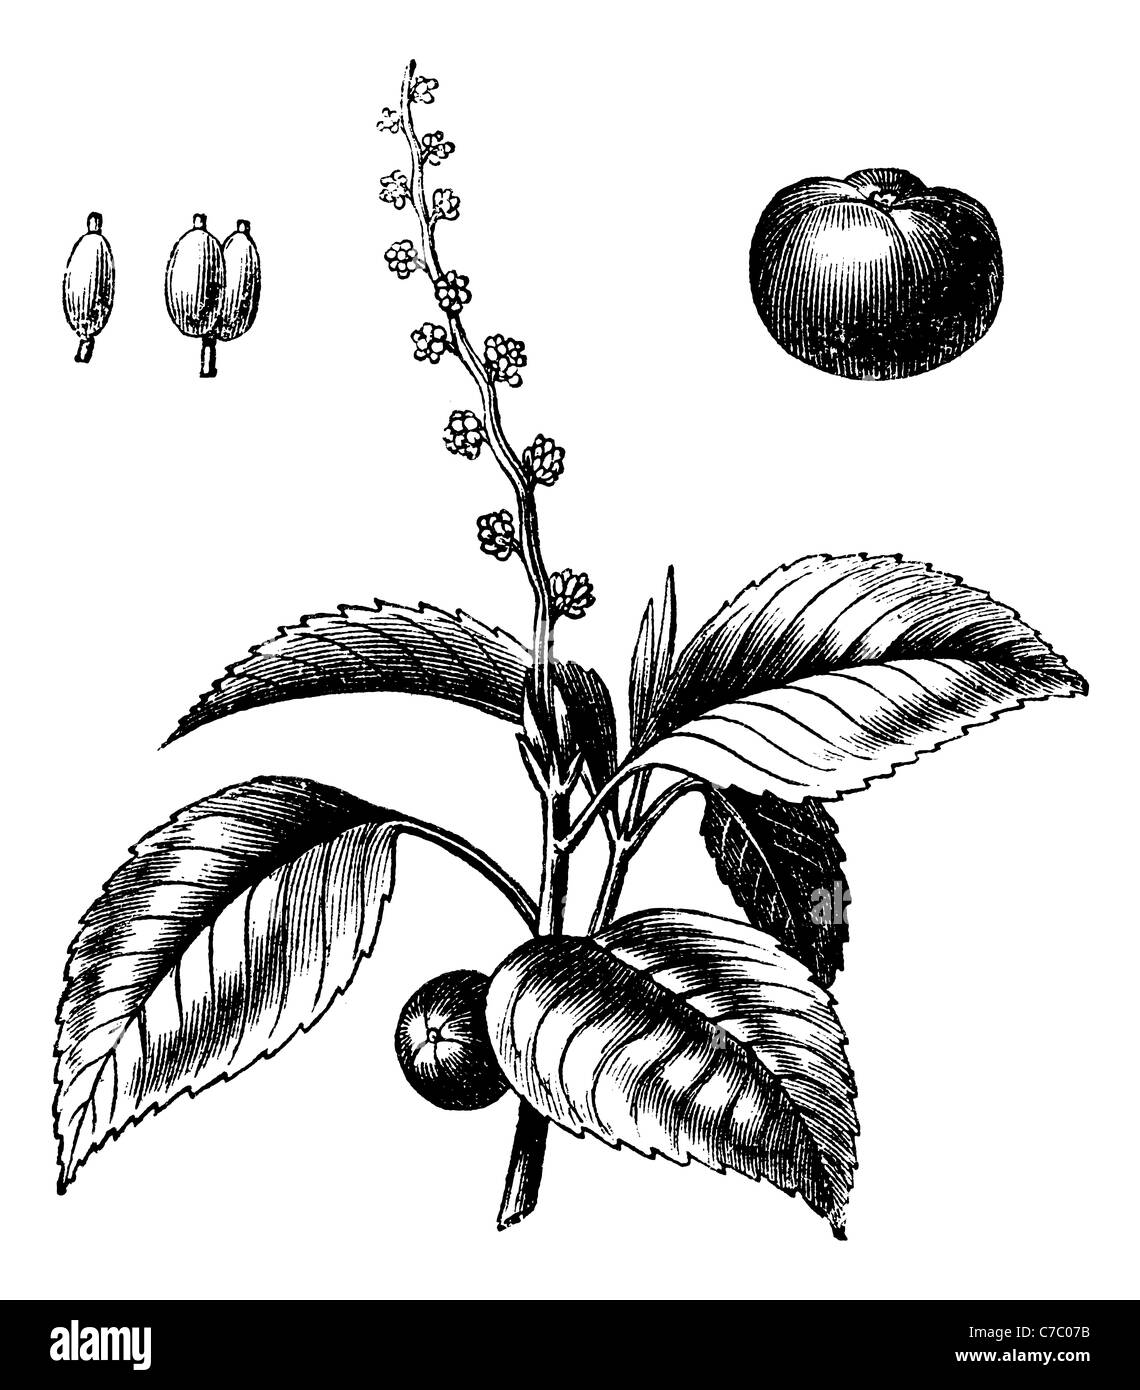 Manchinelbaum Baum oder Mancinella, Vintage Gravur. Alten graviert Illustration der Manchinelbaum Baum isoliert auf einem weißen Hintergrund. Stockfoto